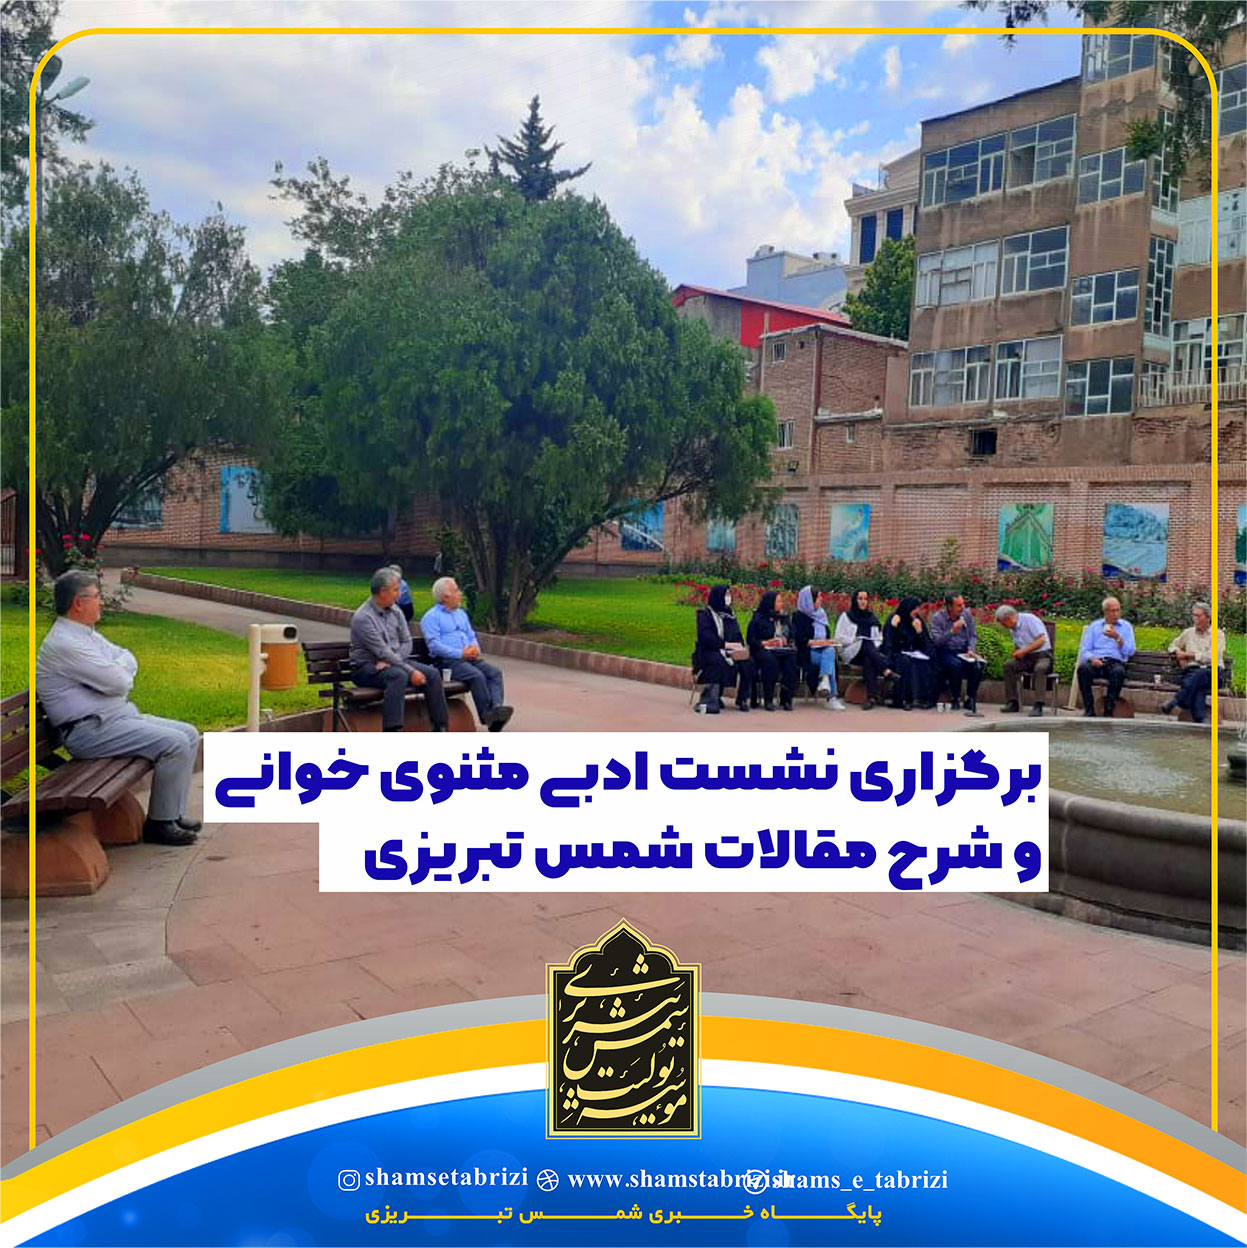 جلسه مثنوی خوانی در محوطه ساختمان شورای اسلامی شهر خوی  برگزار شد.